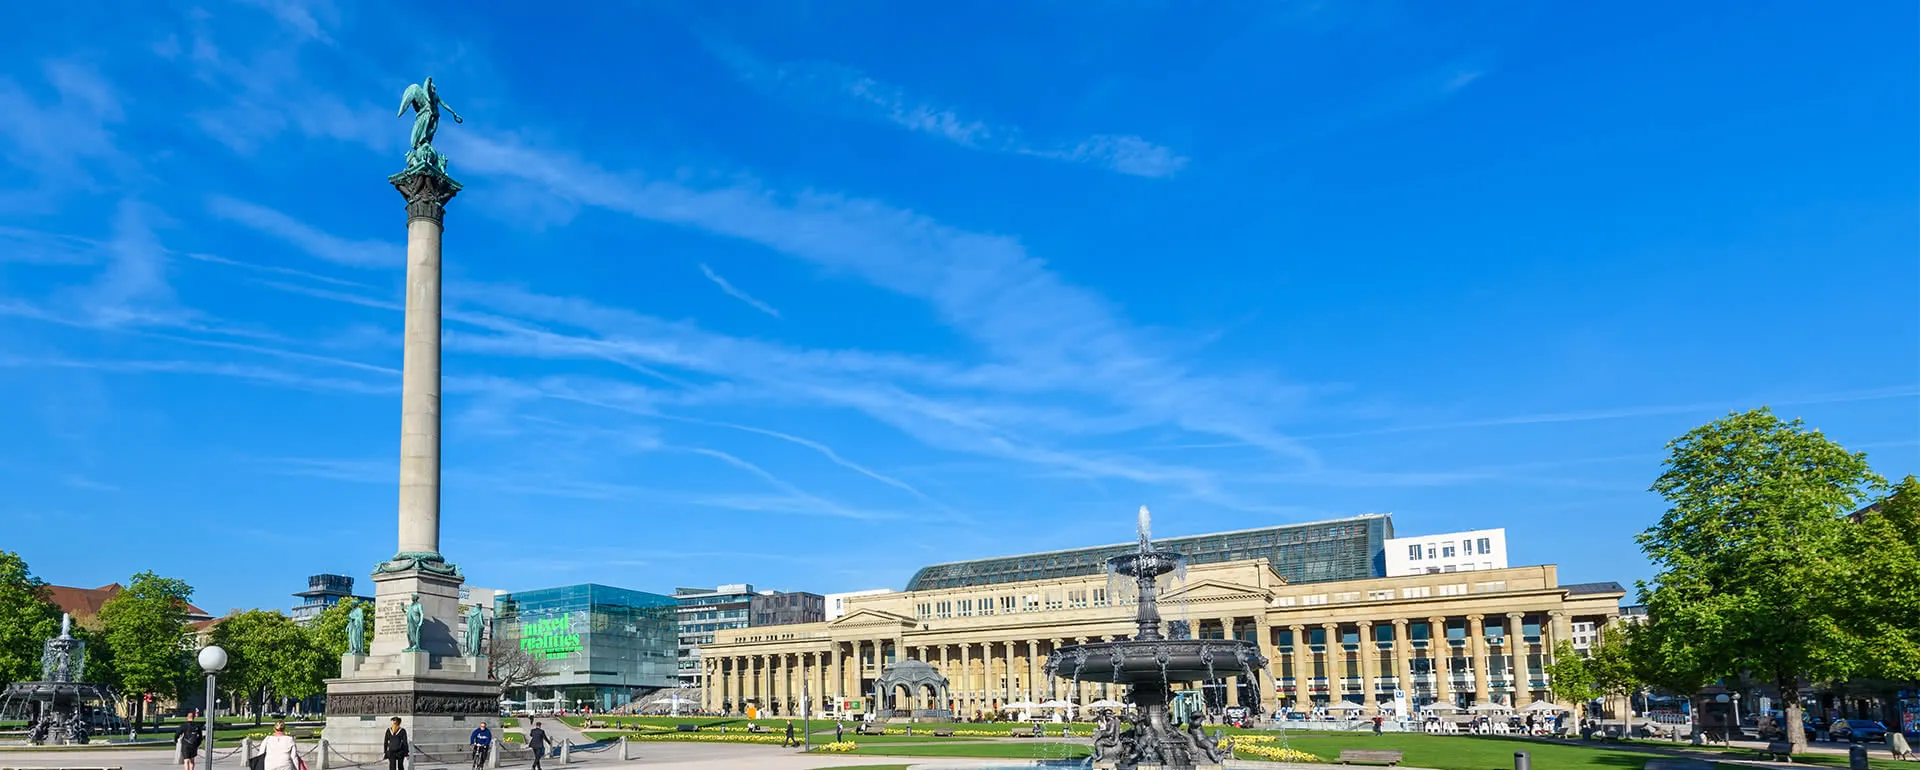 Stuttgart panorama image